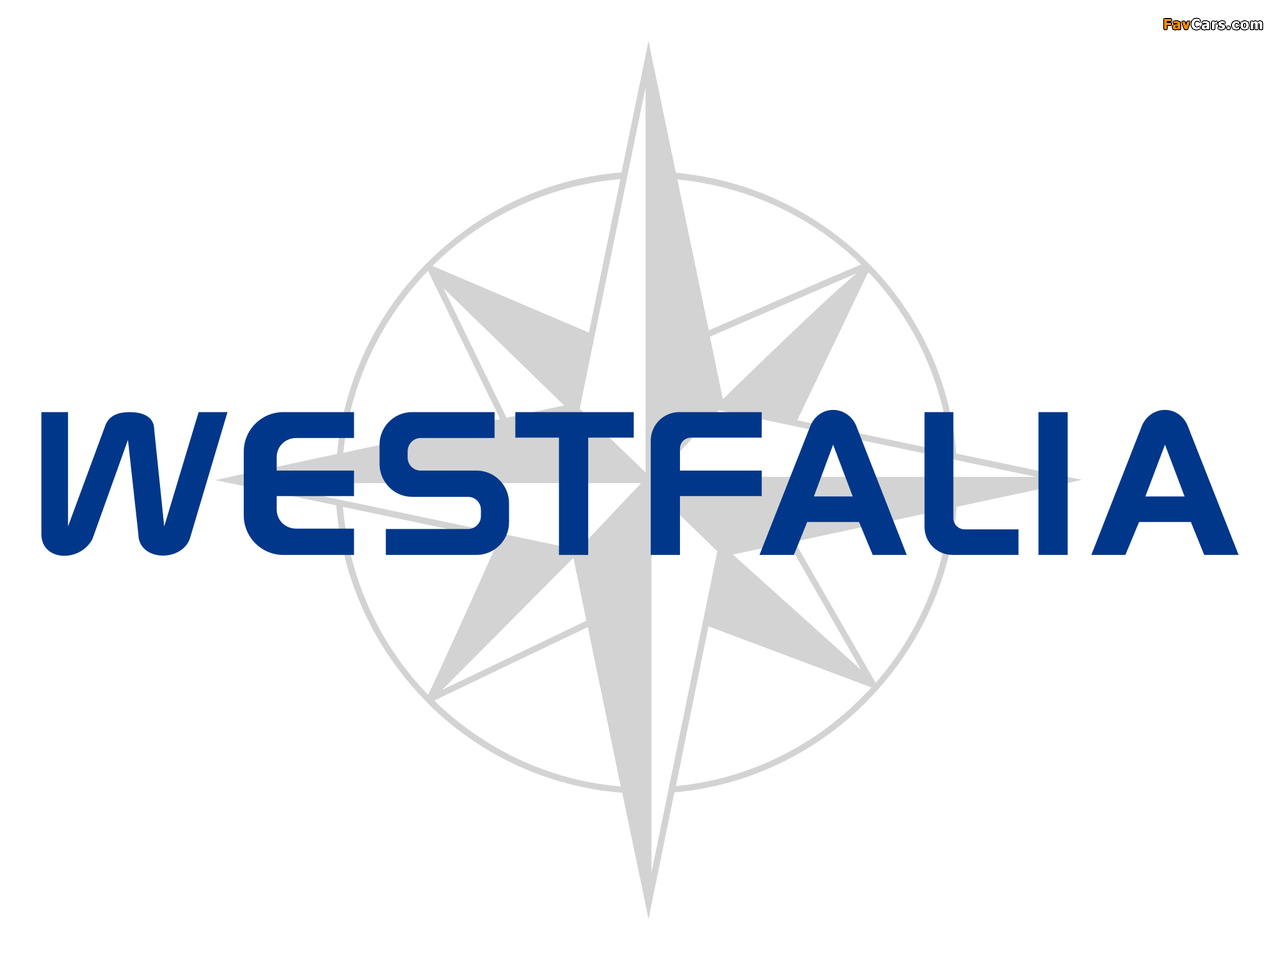 Images of Westfalia (1280 x 960)